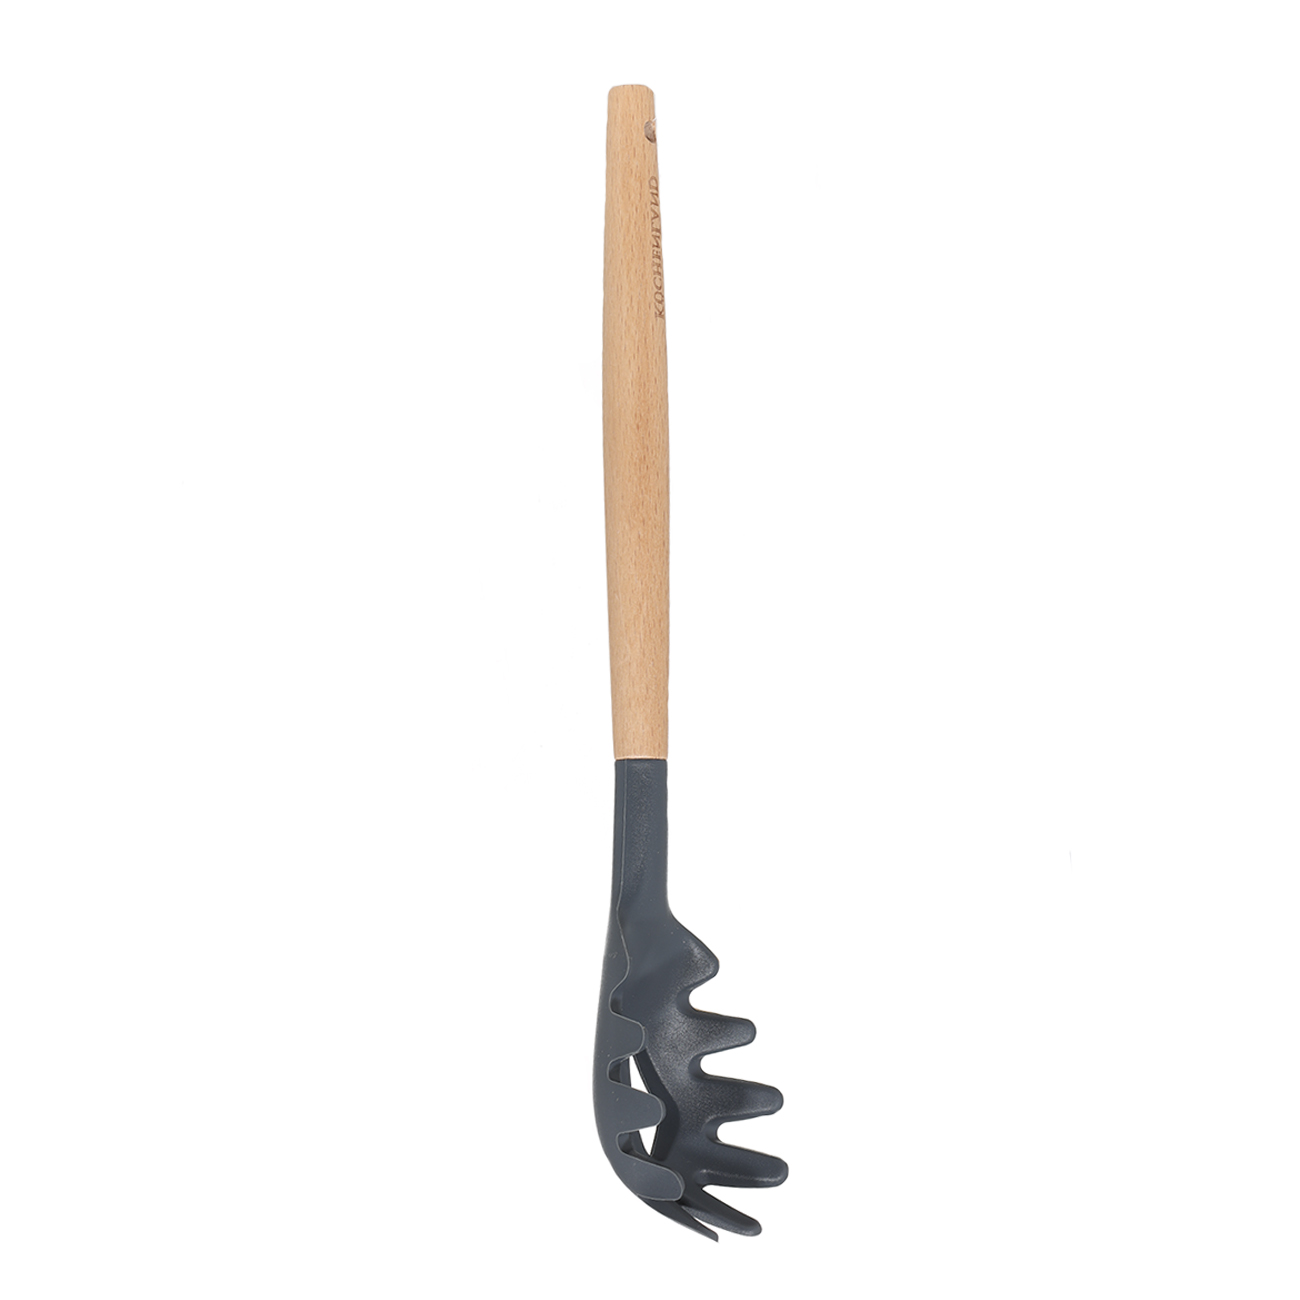 Spaghetti spoon, 31 cm, wood/silicone, Grey, Weekend изображение № 2